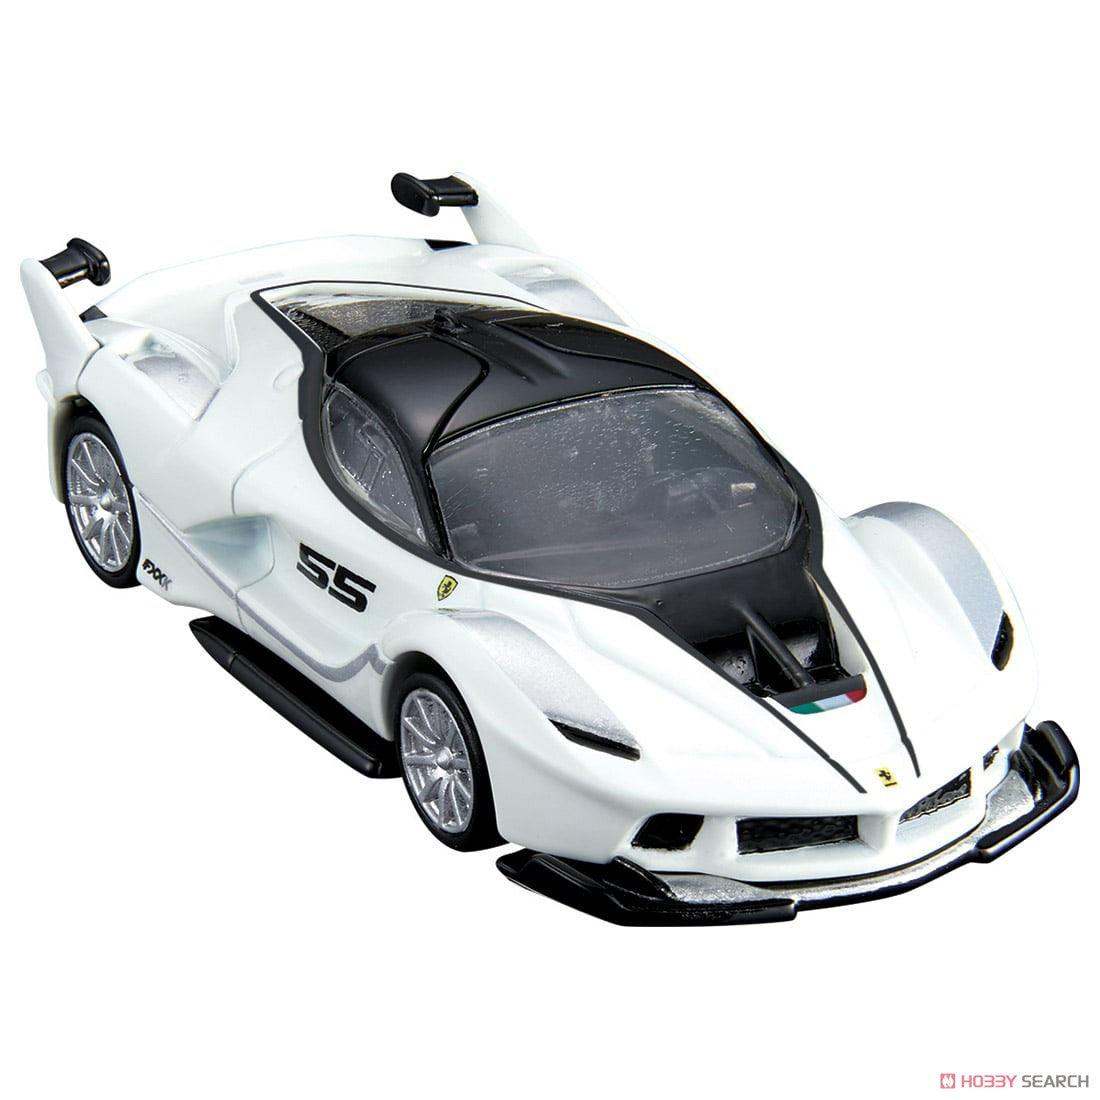 Tomica Premium 33 Ferrari FXX K White